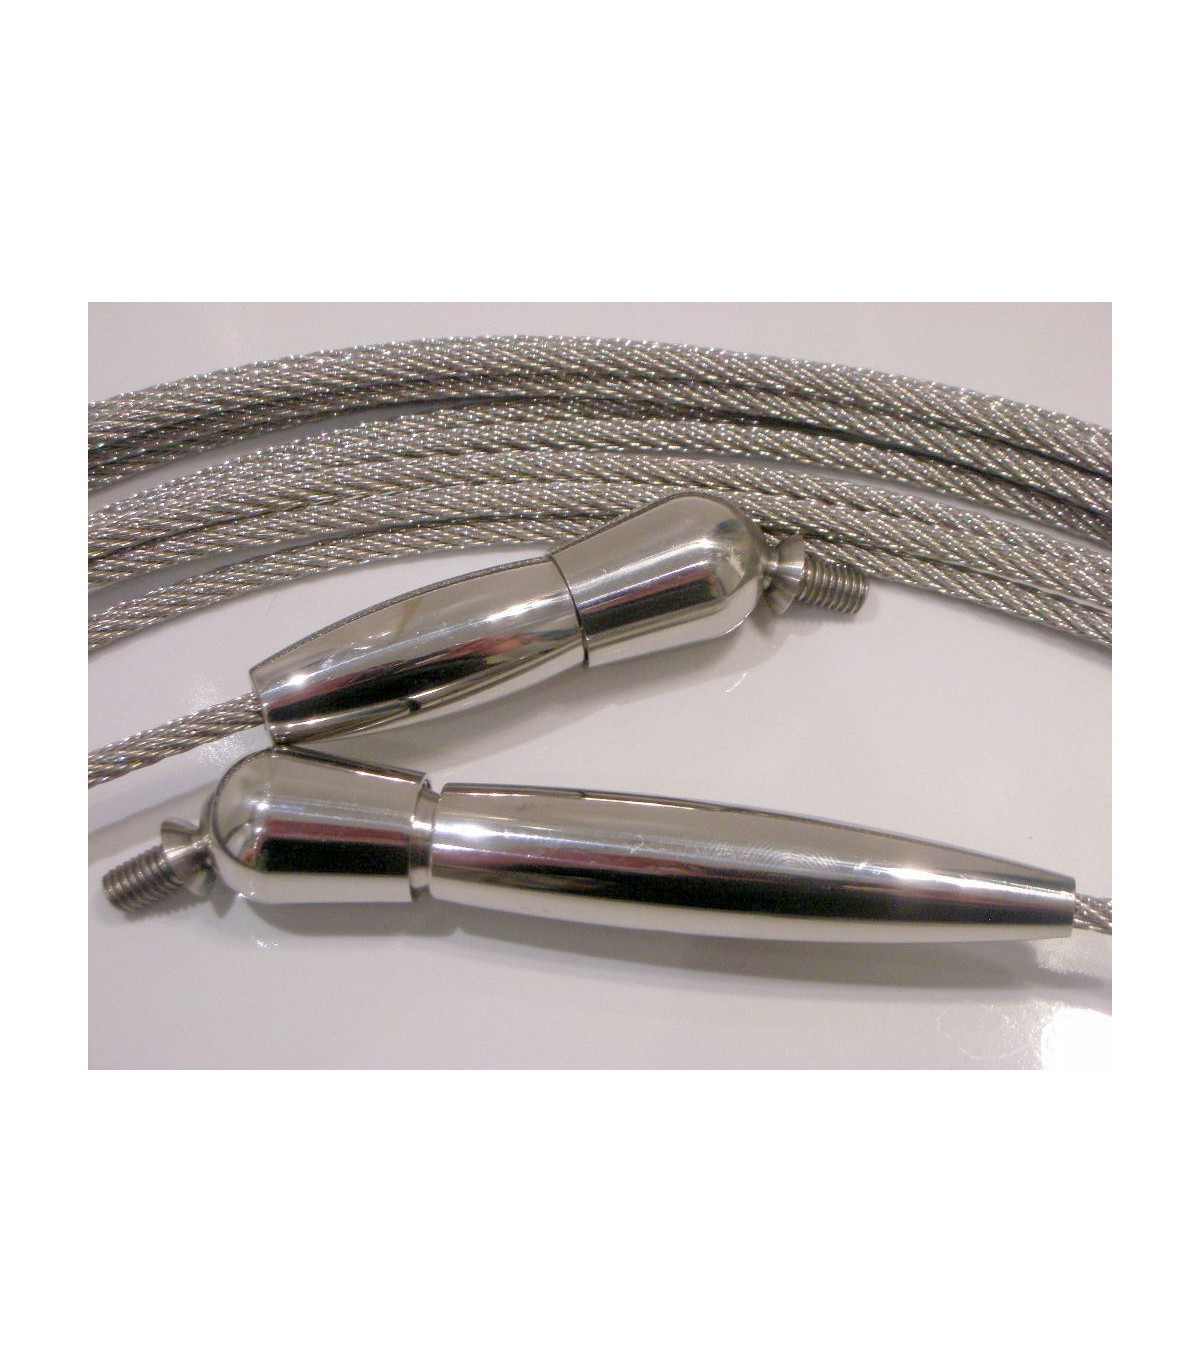 Vente kit cable inox sur Maison du fer diamètre 4mm longueur 6M